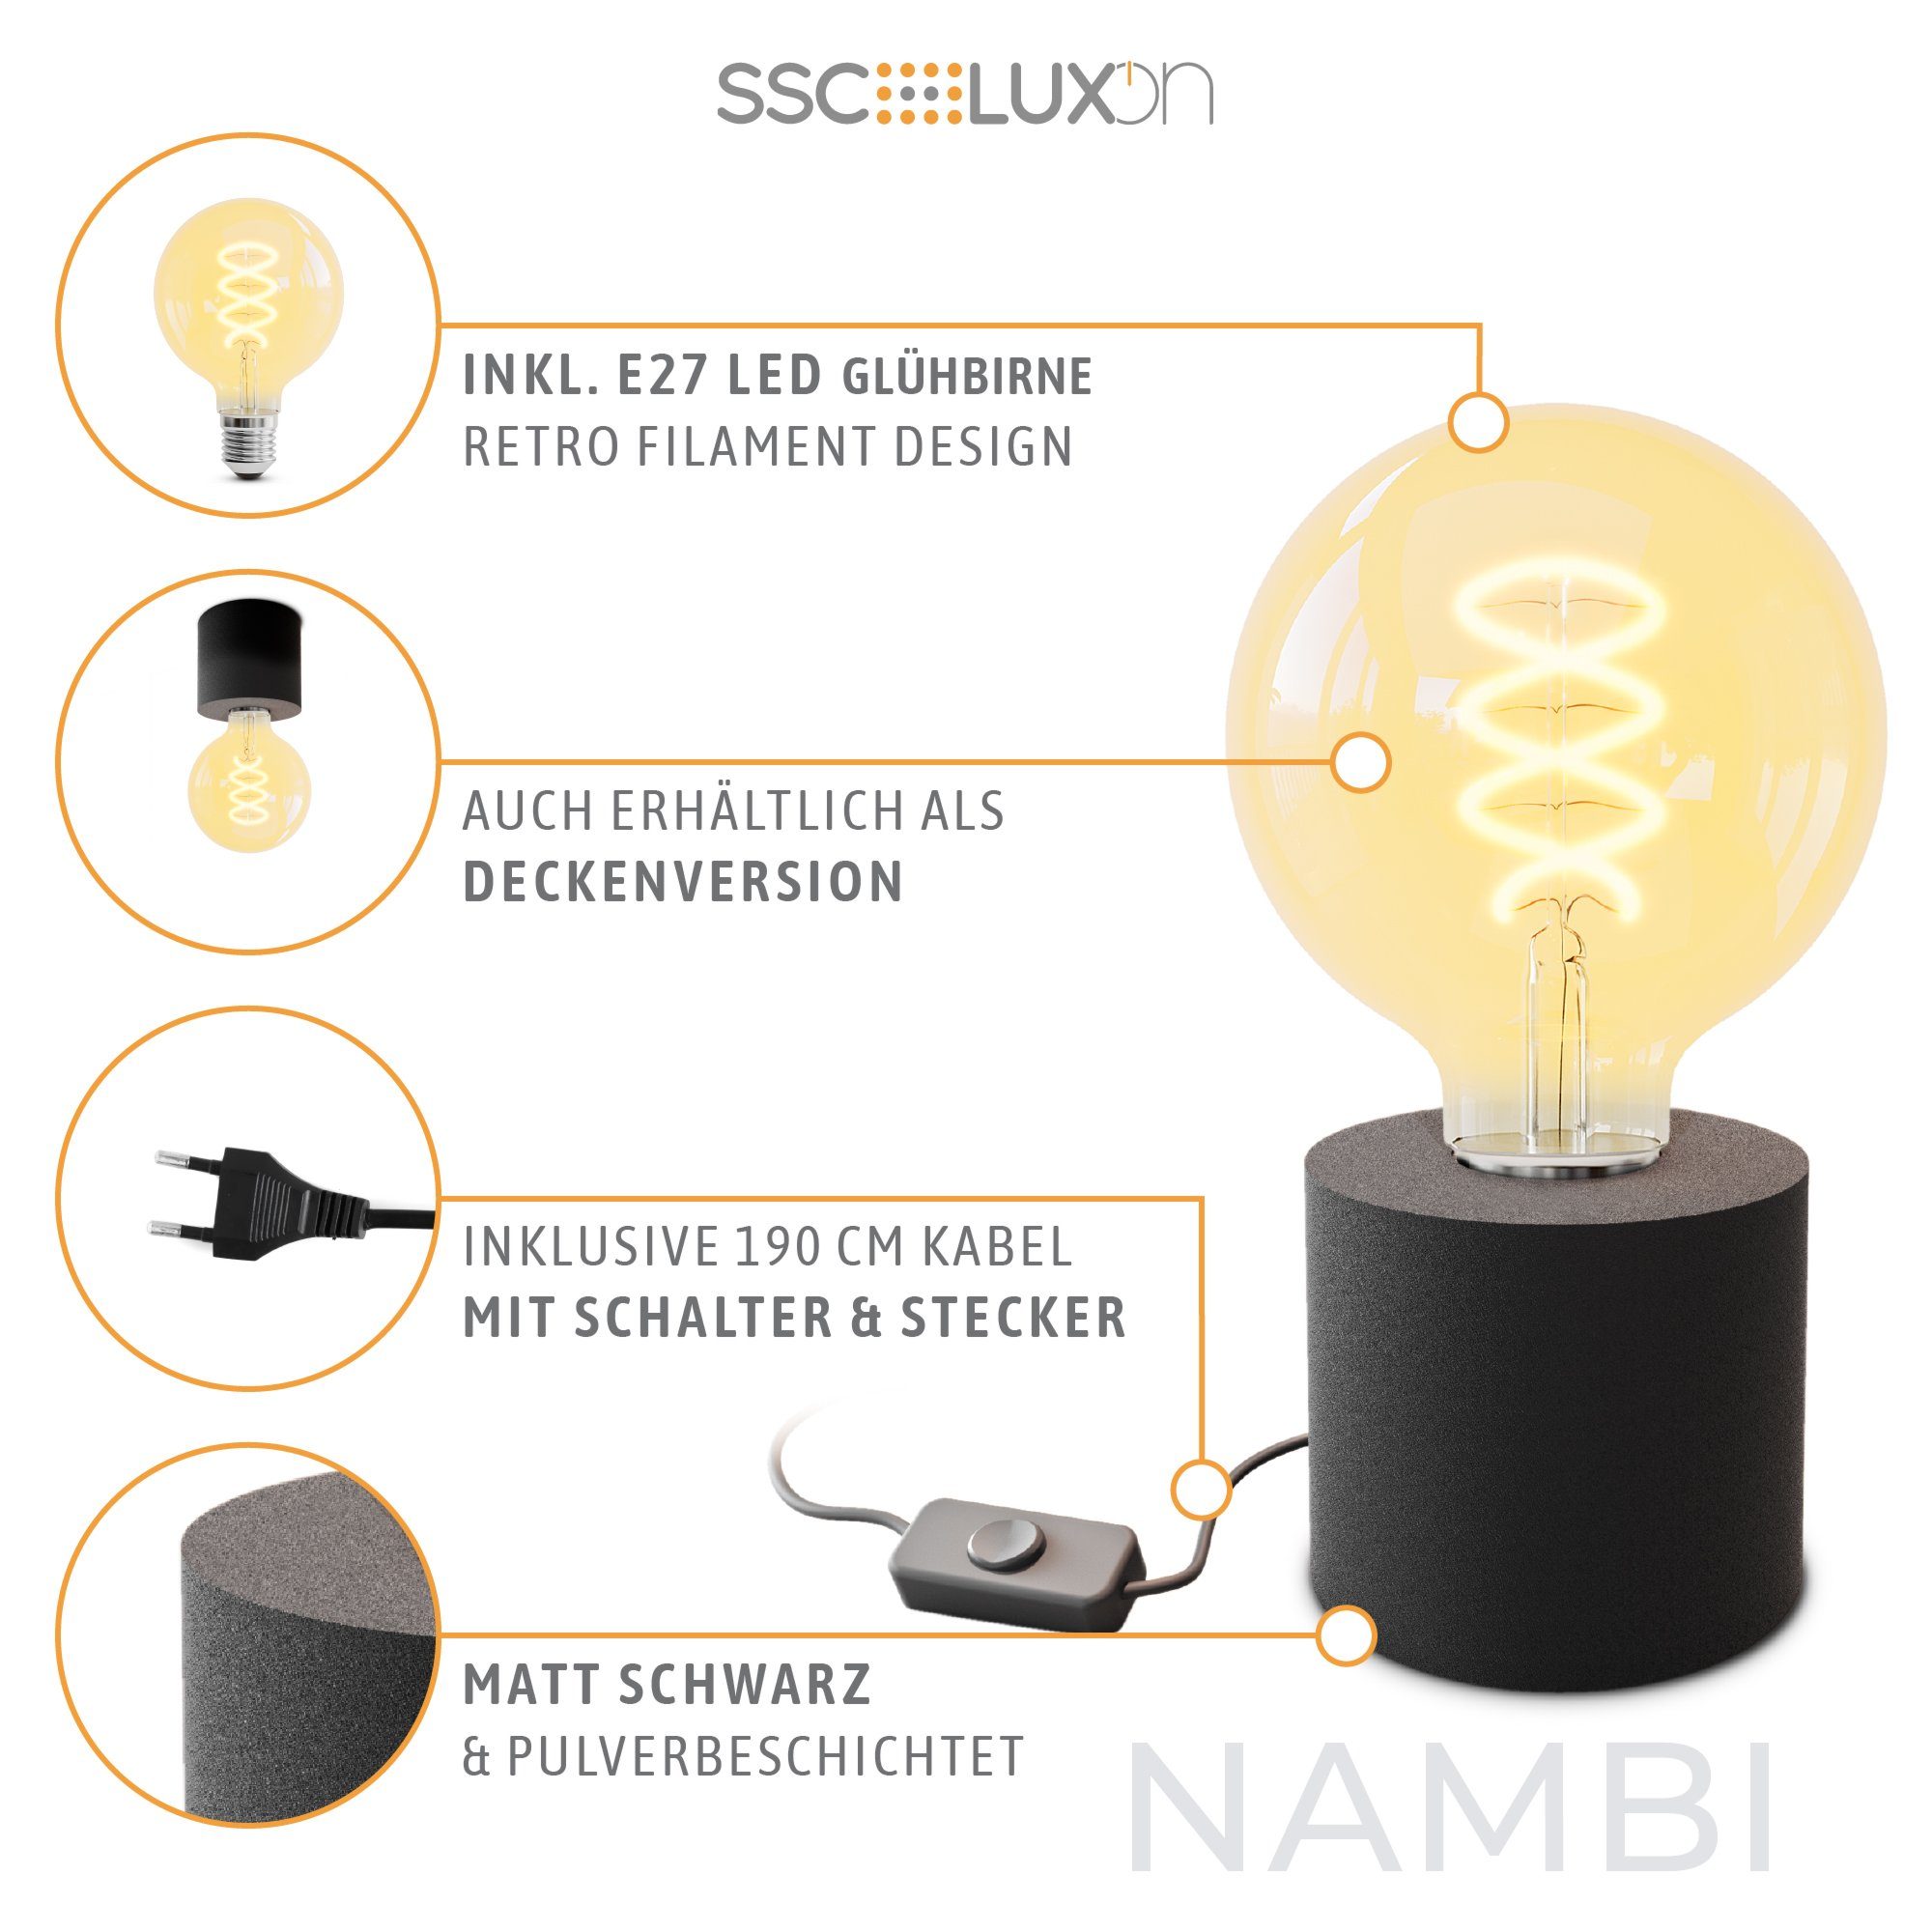 schwarz Globe, Warmweiß mit mit Bilderleuchte LED E27 SSC-LUXon Extra Steckerkabel LED & Tischlampe NAMBI Wand-